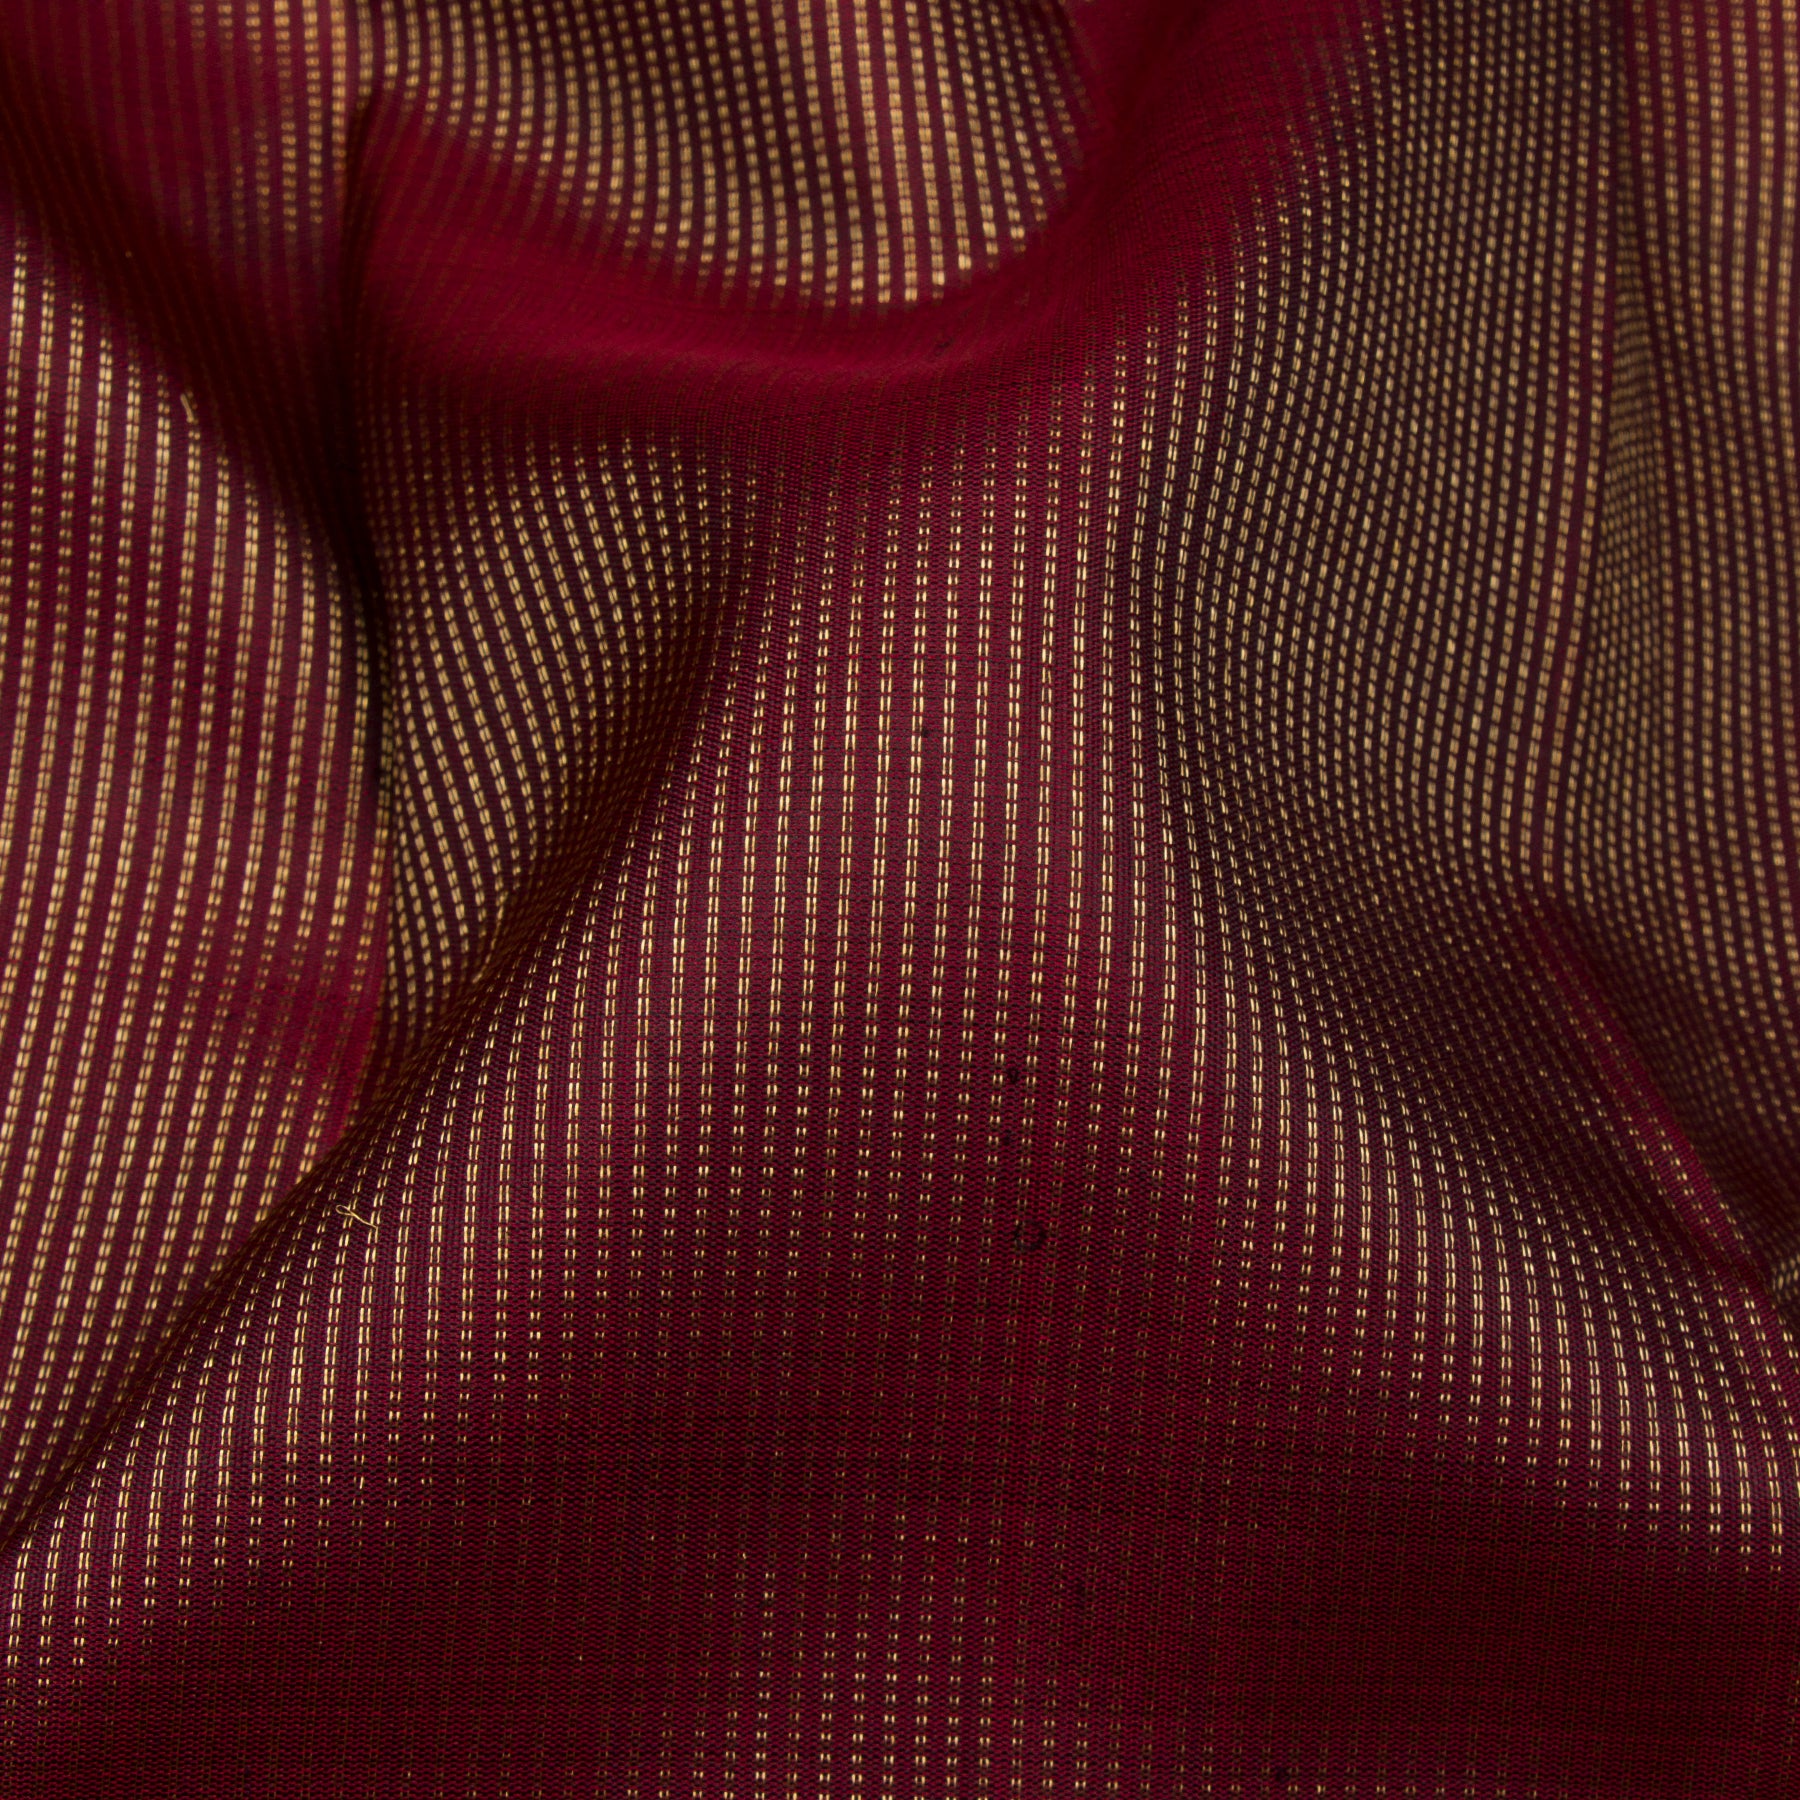 Kanakavalli Kanjivaram Silk Sari 24-599-HS001-00251 - Fabric View